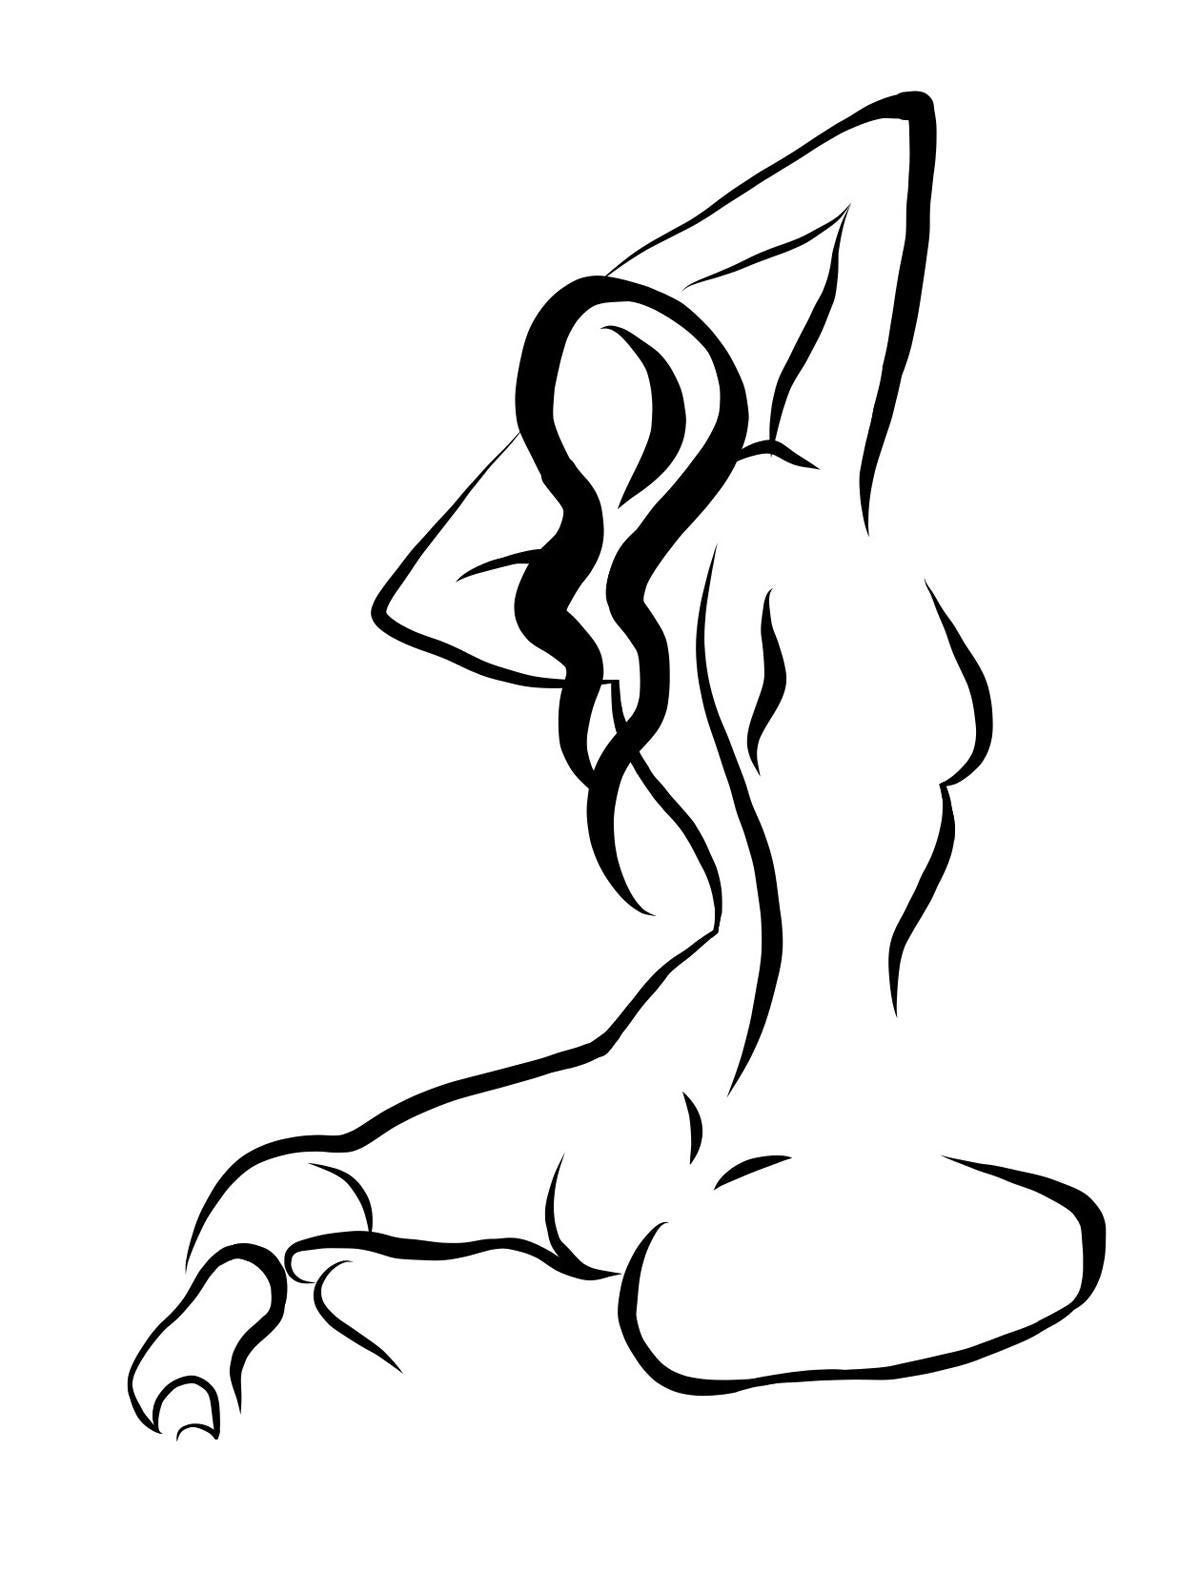 Haiku #17 - Digitale Vektor-Zeichnung eines sitzenden weiblichen Aktes von hinten